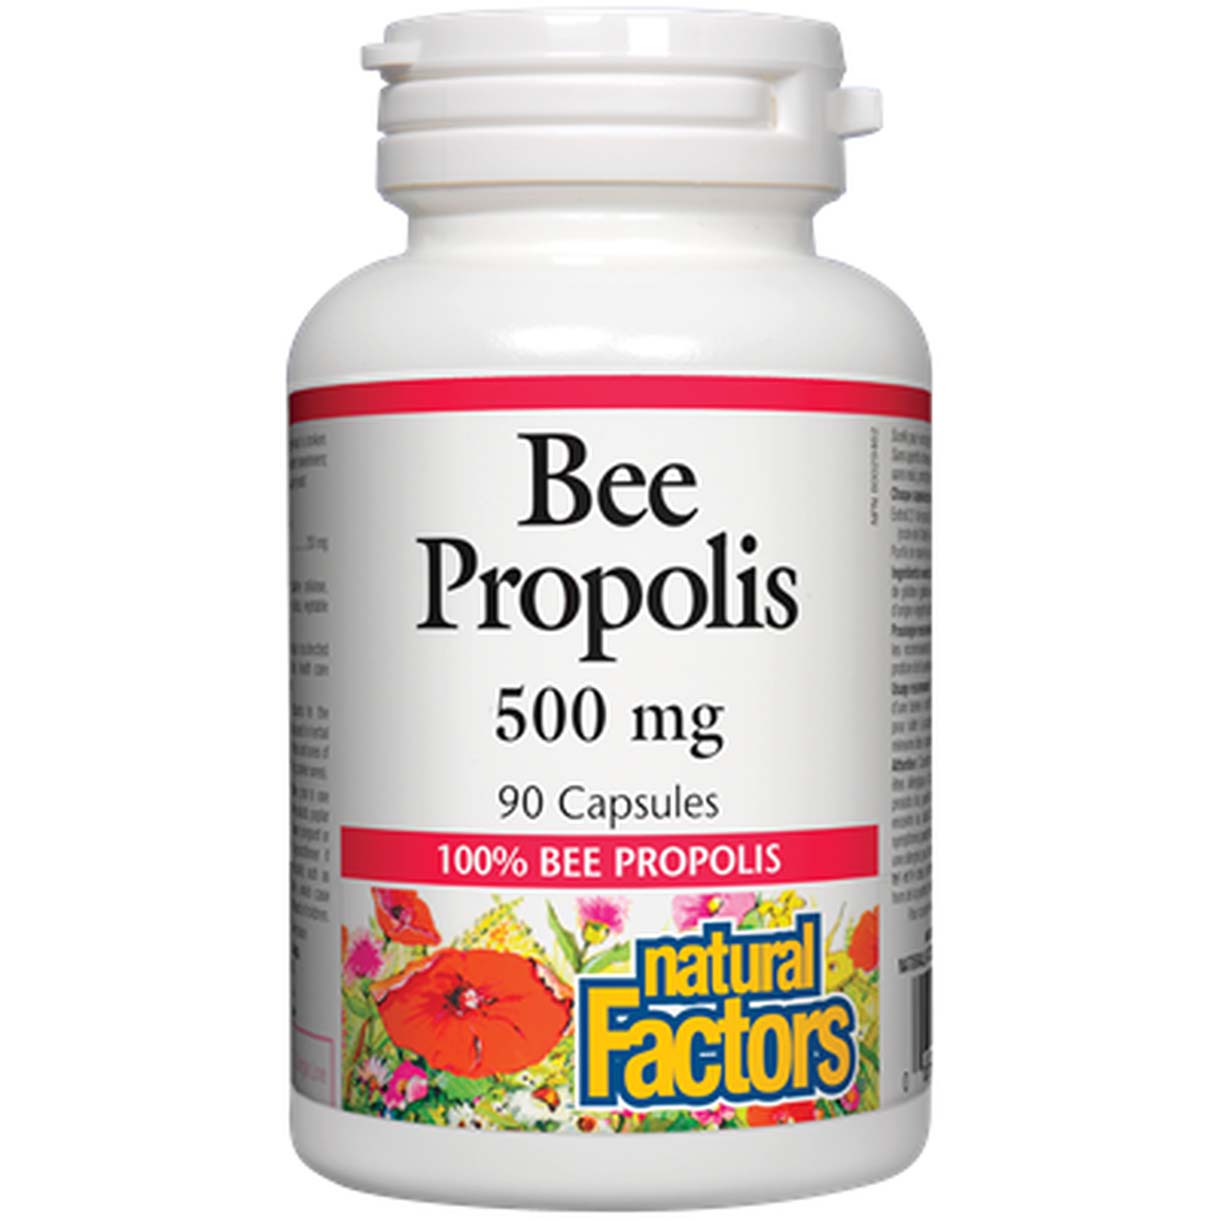 Natural Factors Bee Propolis, 500 mg, 90 Capsules